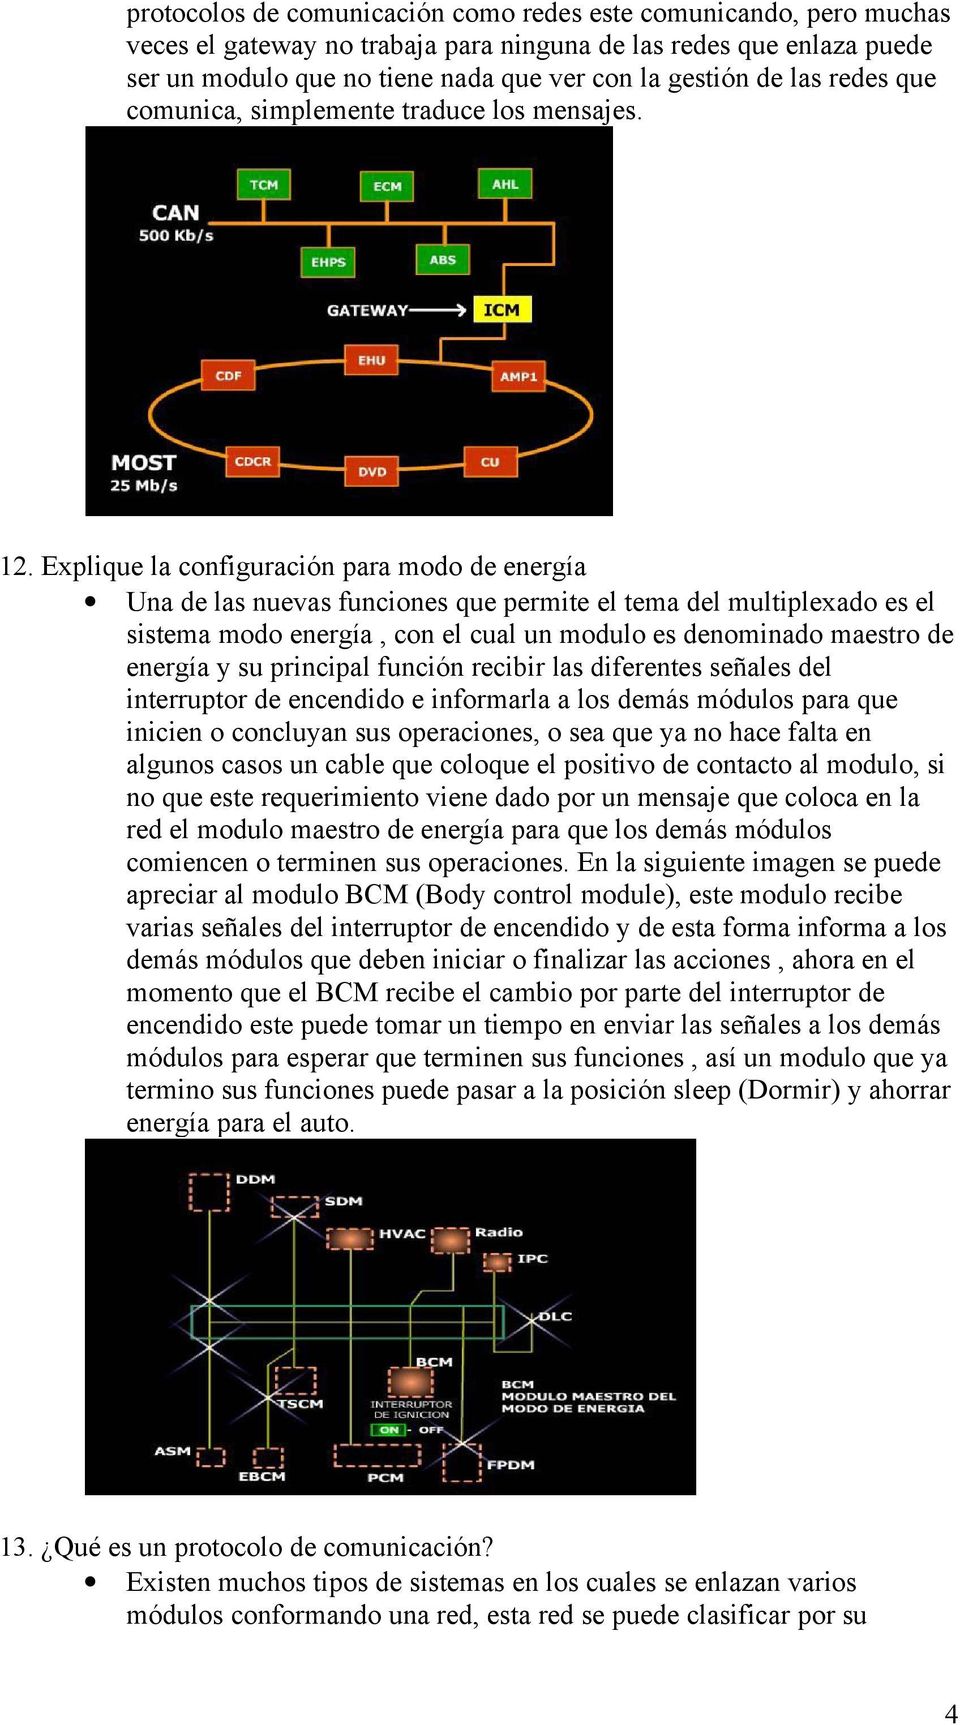 Explique la configuración para modo de energía Una de las nuevas funciones que permite el tema del multiplexado es el sistema modo energía, con el cual un modulo es denominado maestro de energía y su